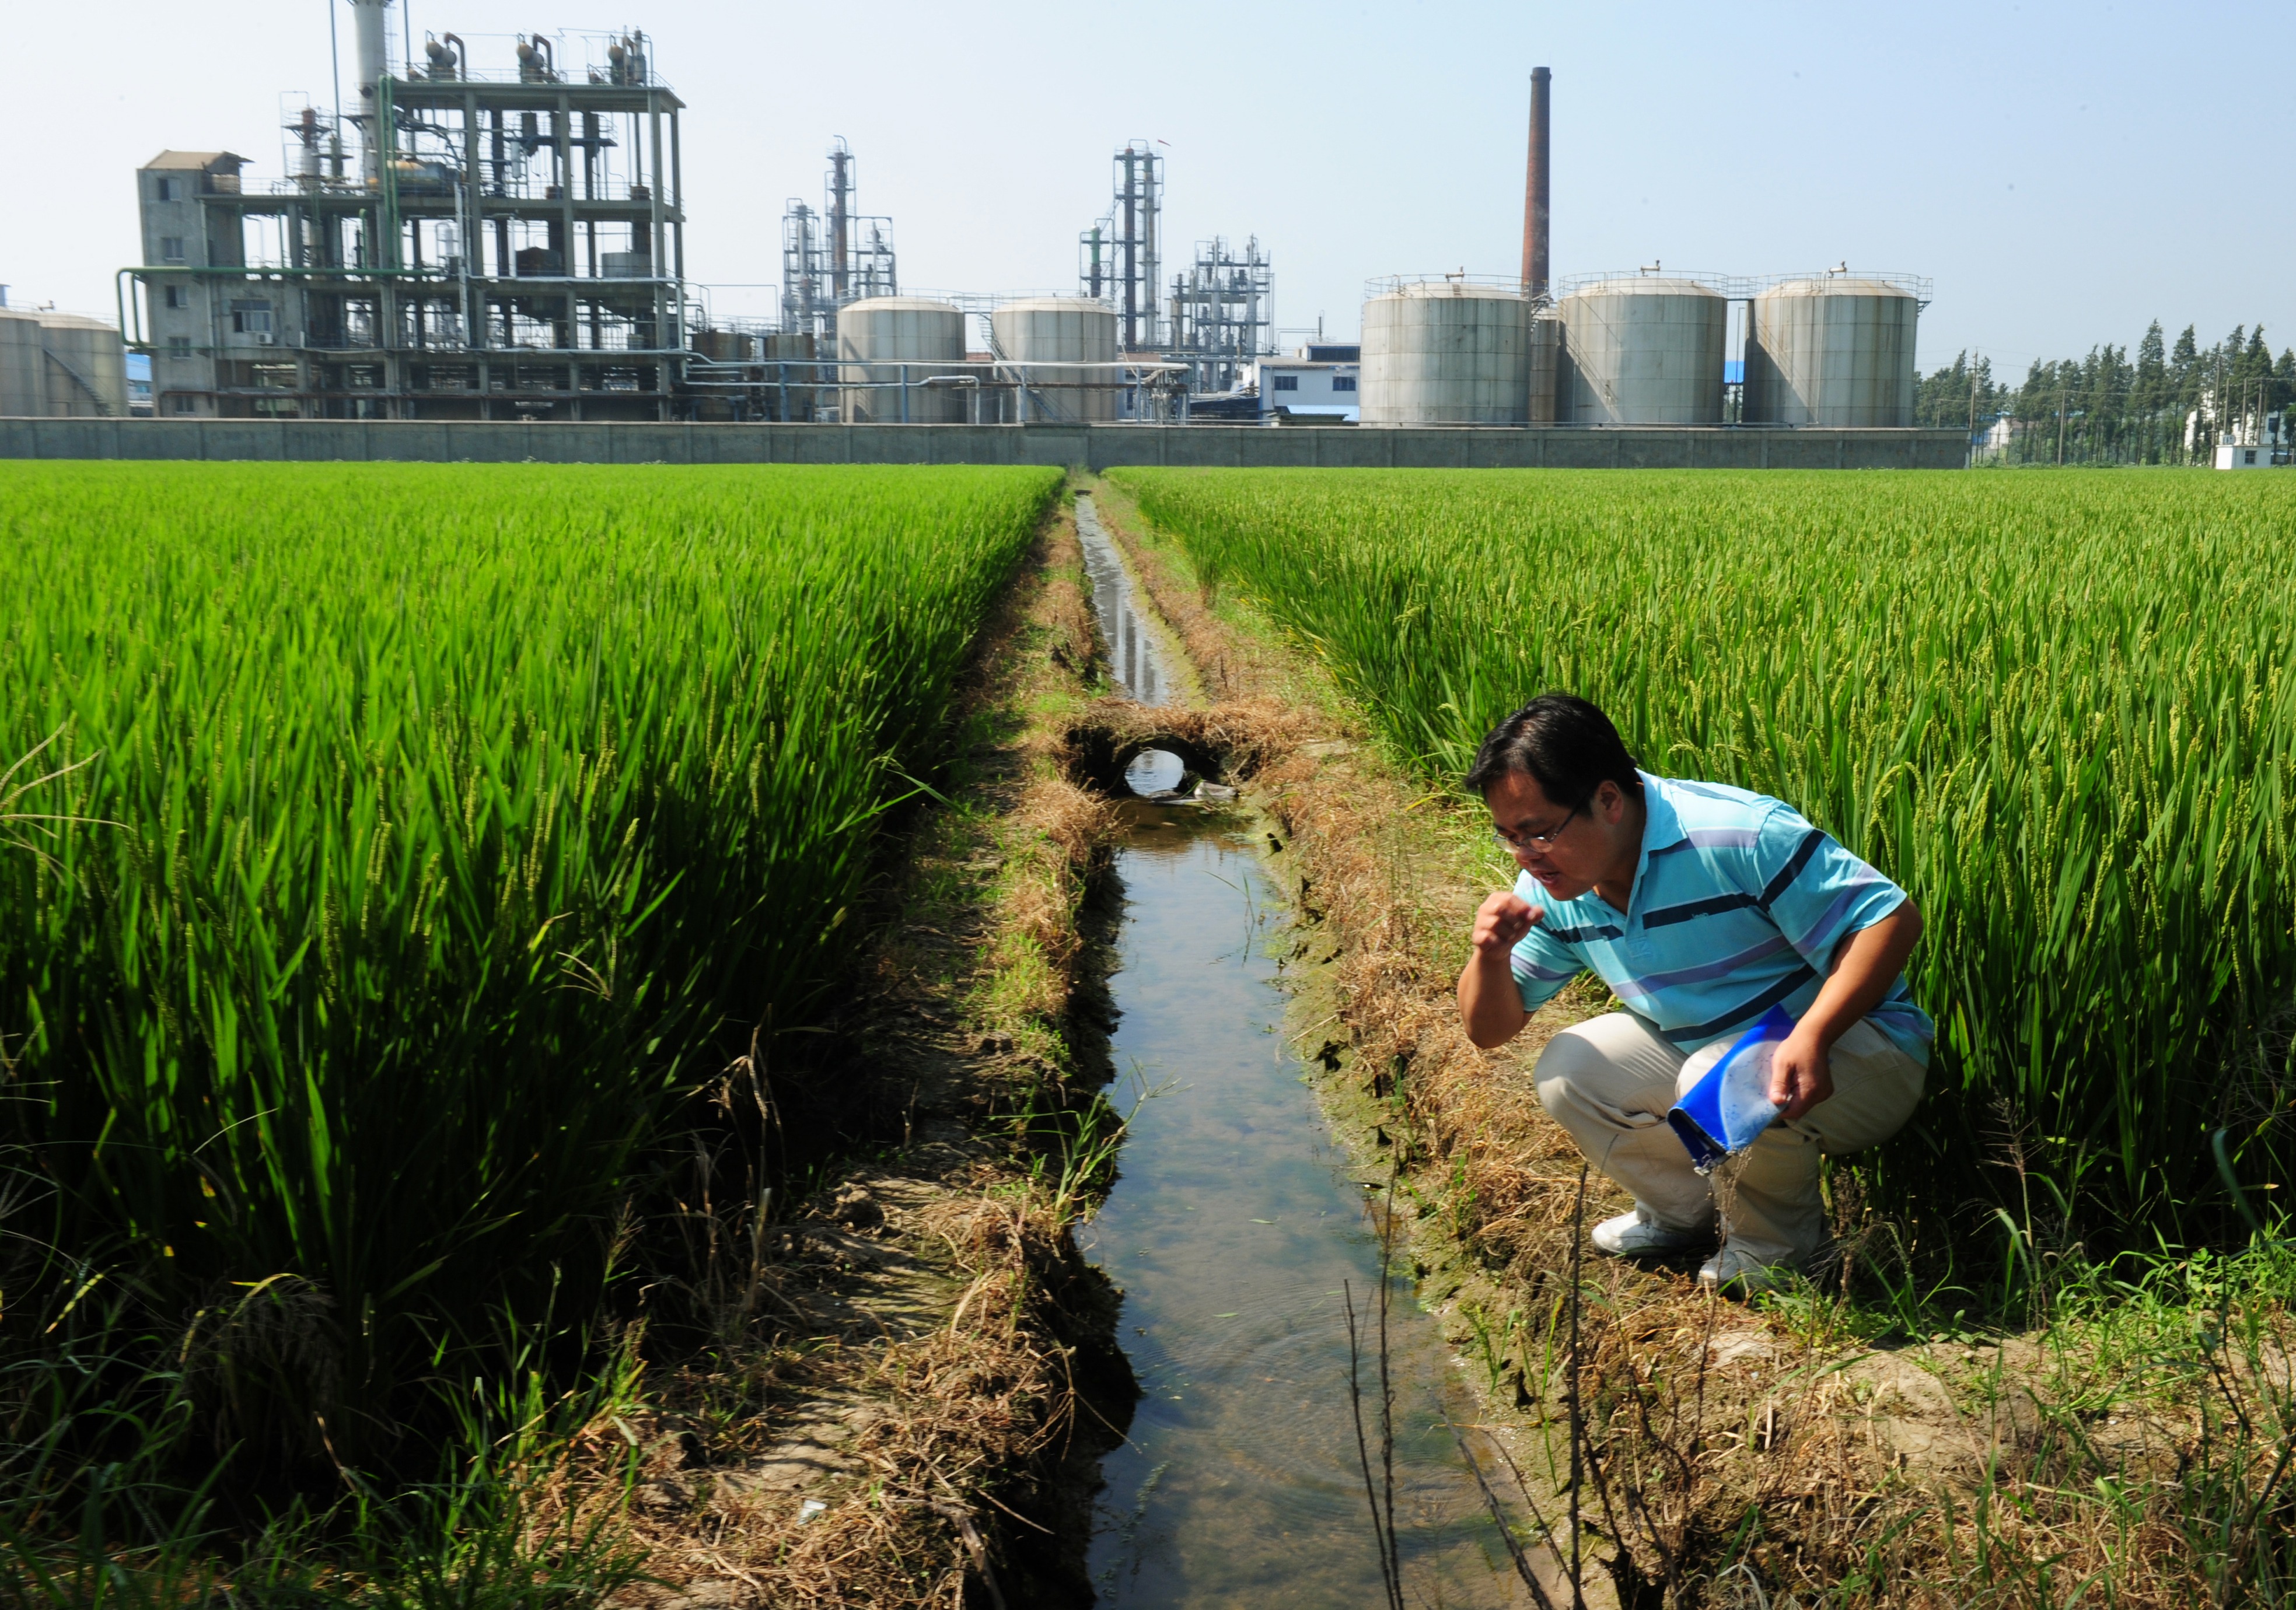 Борьба с загрязнением почвы. Экология Китая. Экологическое сельское хозяйство. Промышленность и окружающая среда.